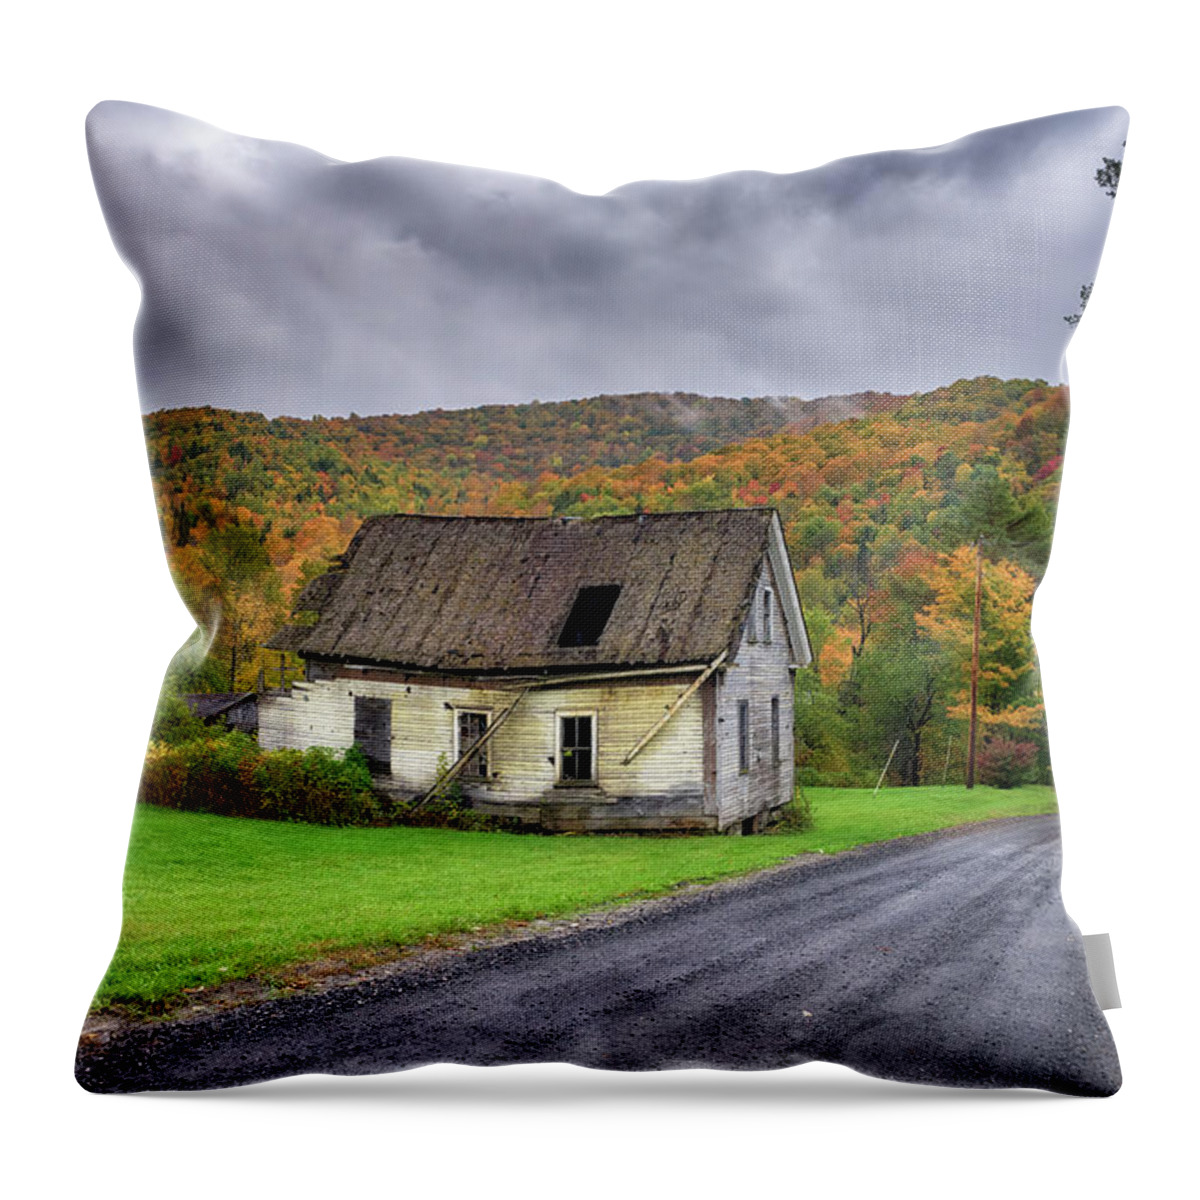 Vermont Throw Pillow featuring the photograph Forgotten by Rick Berk